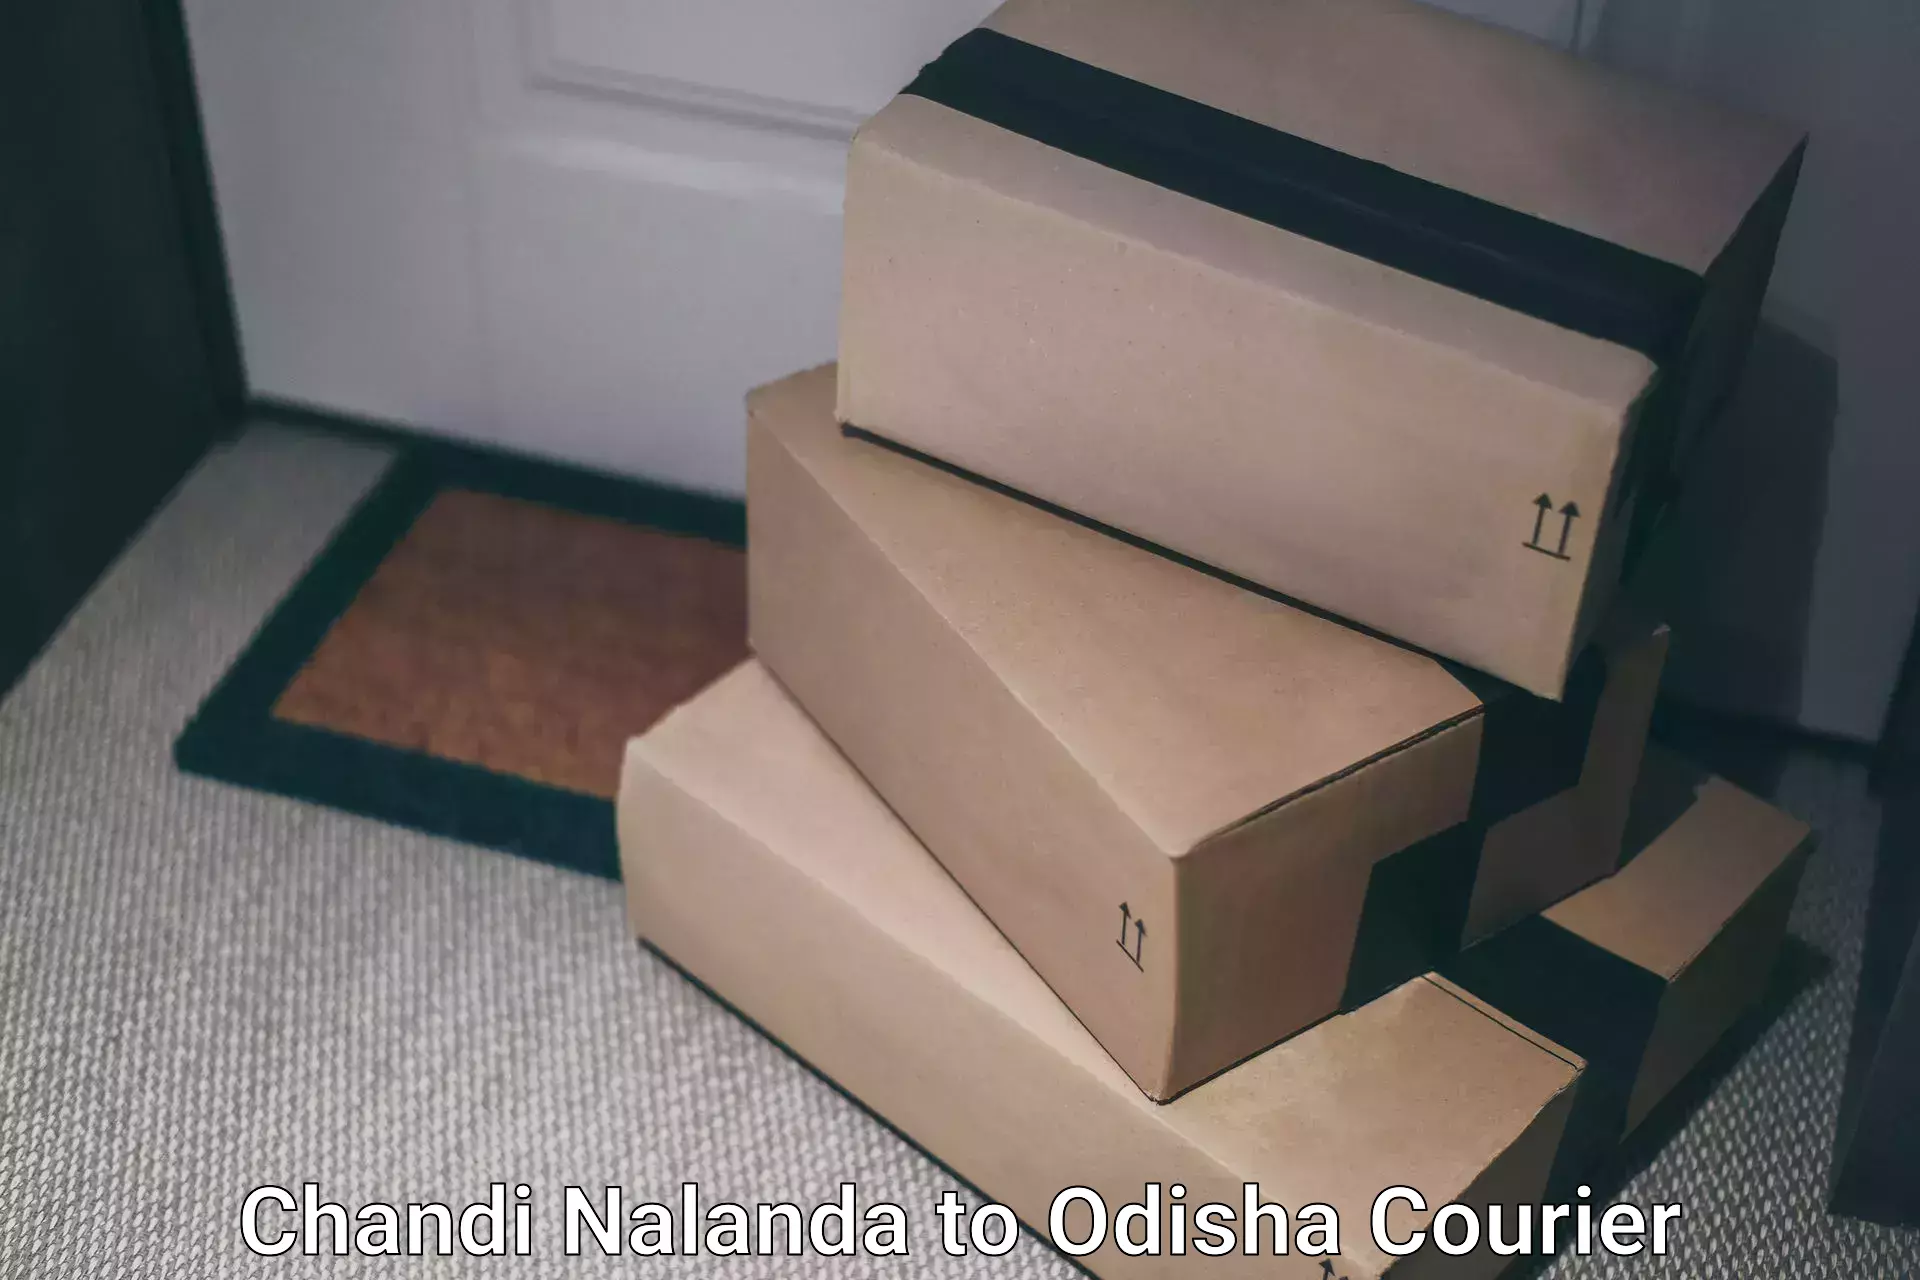 Global courier networks Chandi Nalanda to IIT Bhubaneshwar